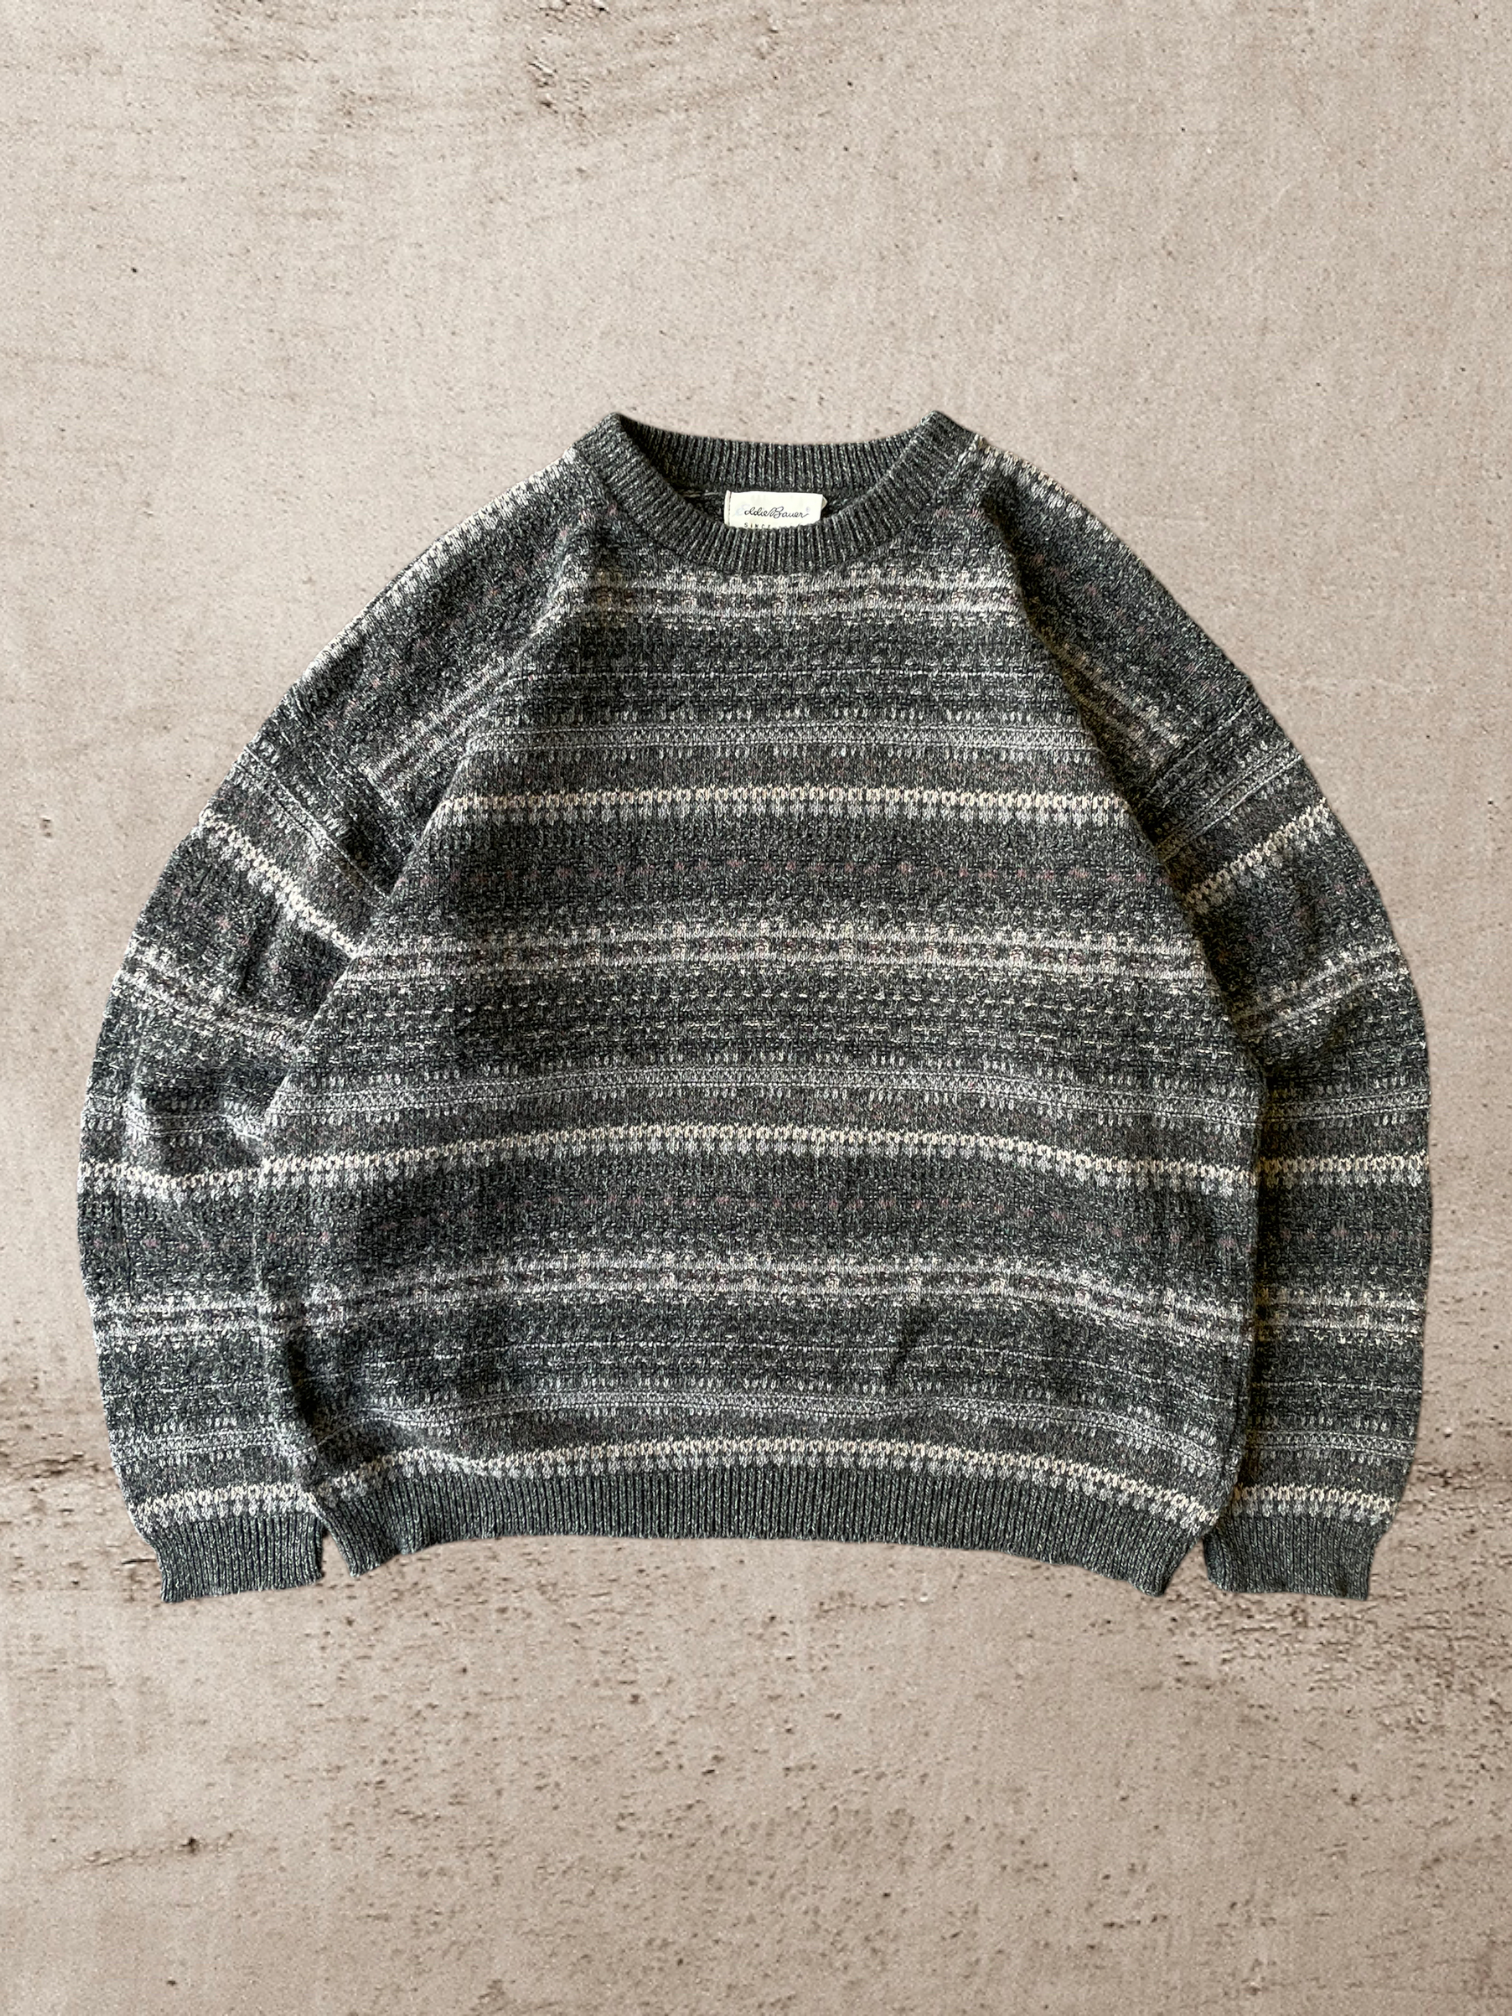 Vintage Eddie Bauer Knit Sweater - XL